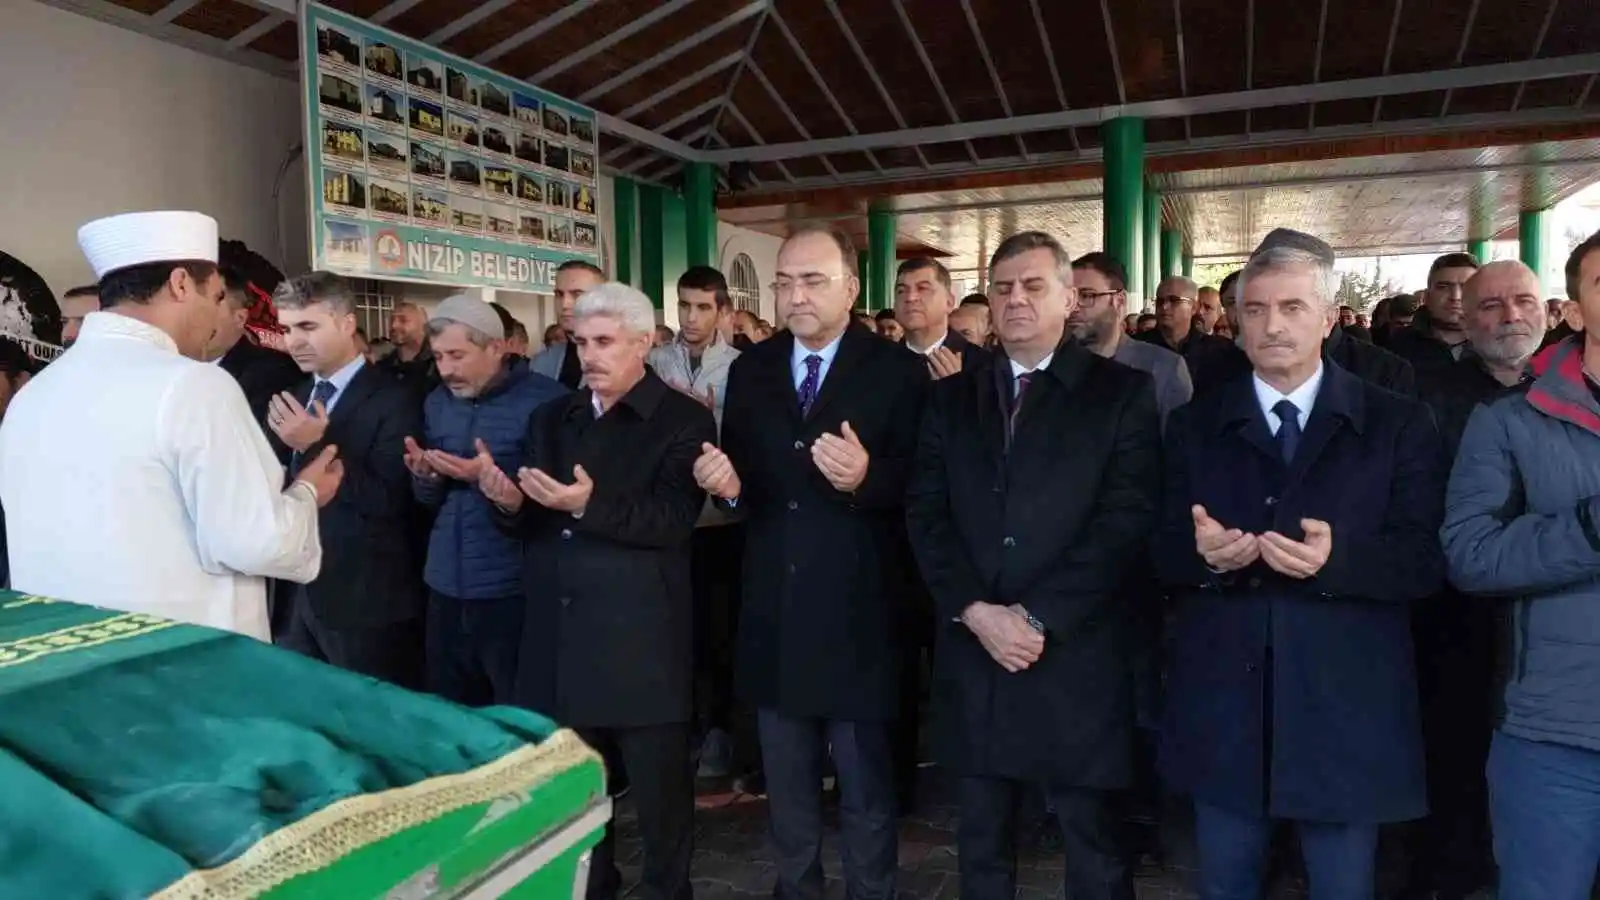 Gaziantep Bölge Adliye Mahkemesi Başkanı Kaya’nın acı günü
